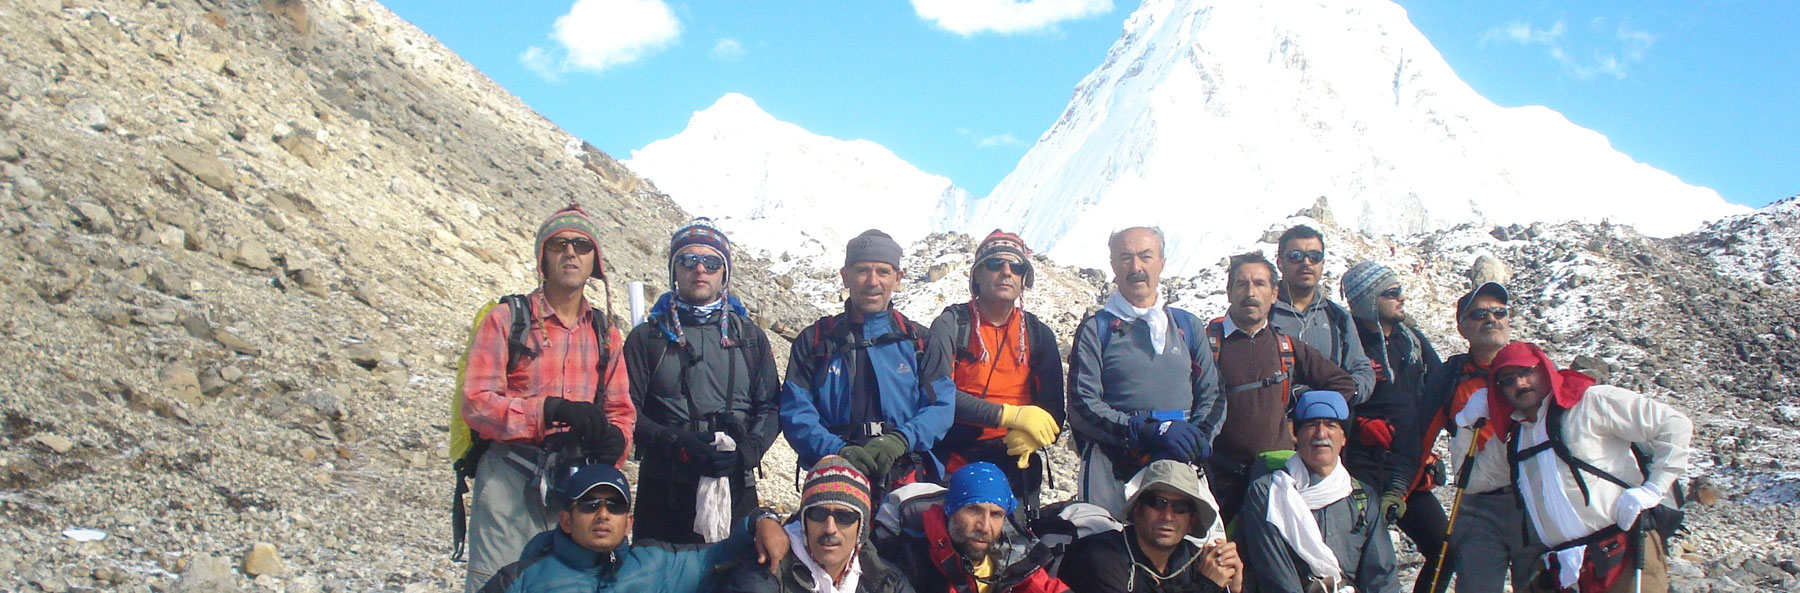 Nepal trekking package